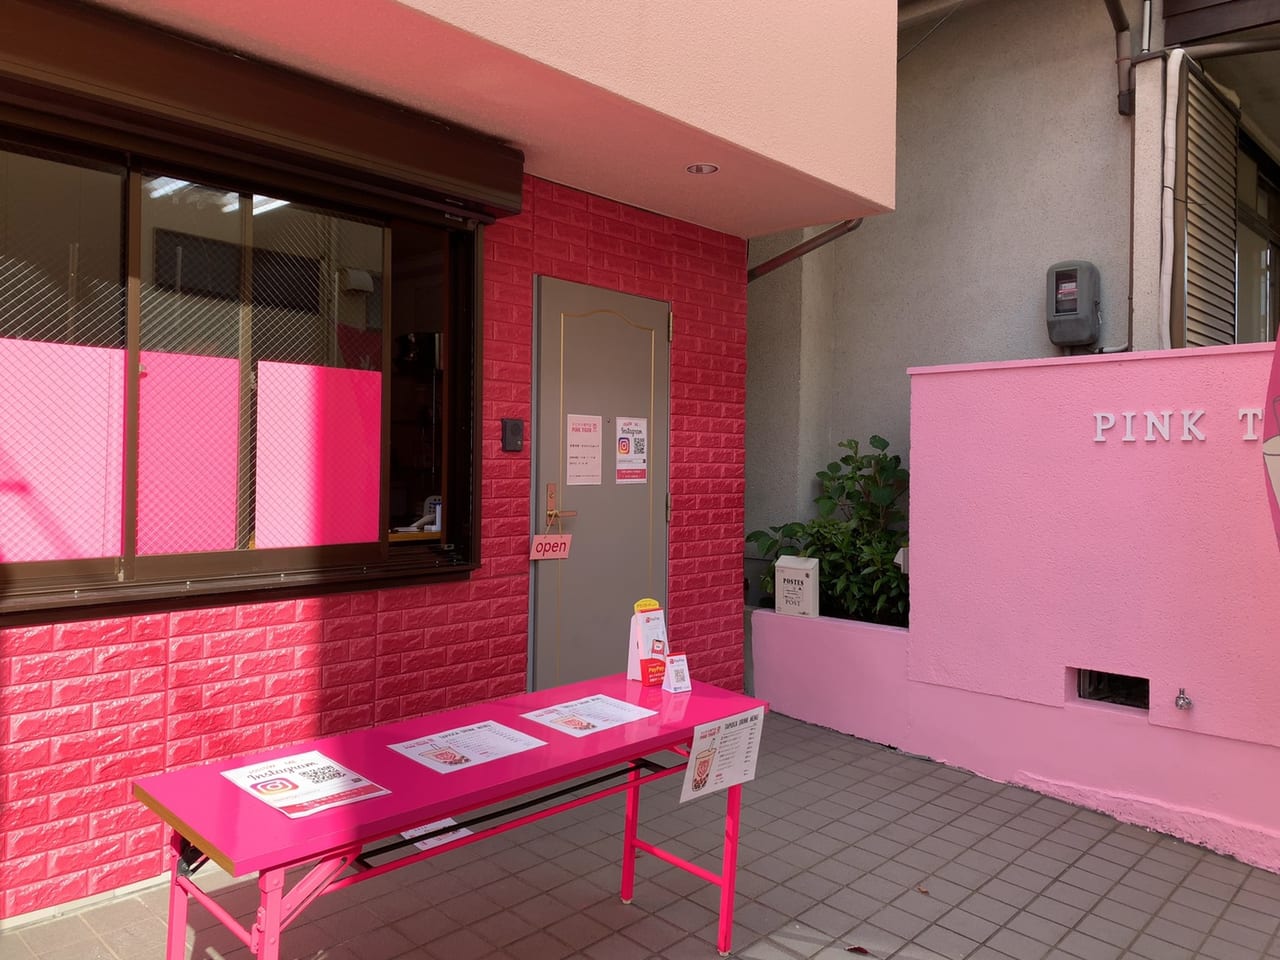 神戸市東灘区 岡本でタピる ピンクの壁が目印 タピオカ専門店ピンクタイガー スイーツ激戦区に新規オープン 号外net 神戸市灘区 東灘区